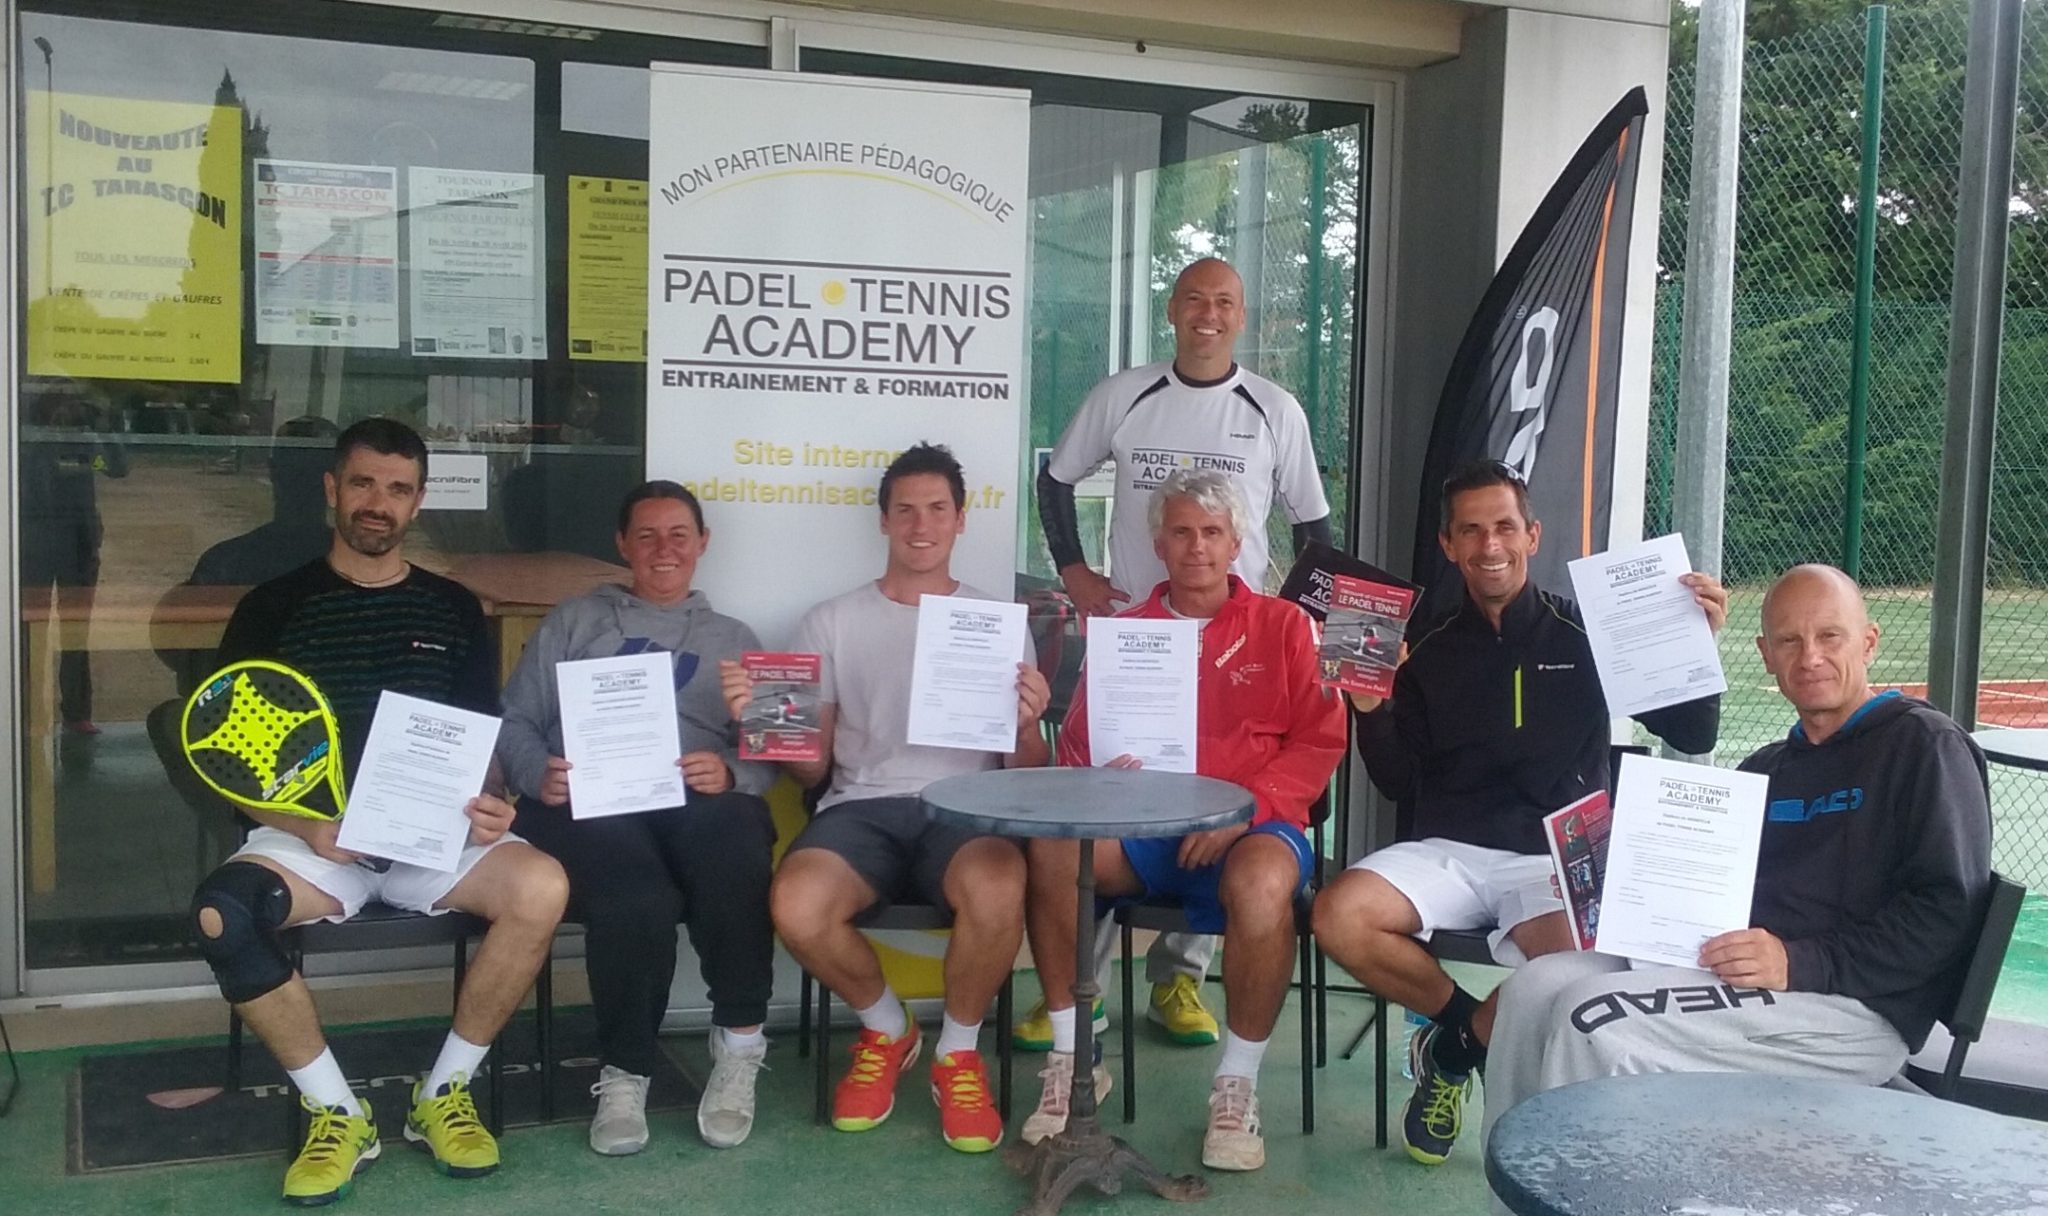 invigning av Tarascon Tennis Club med Padel Tennis Academy